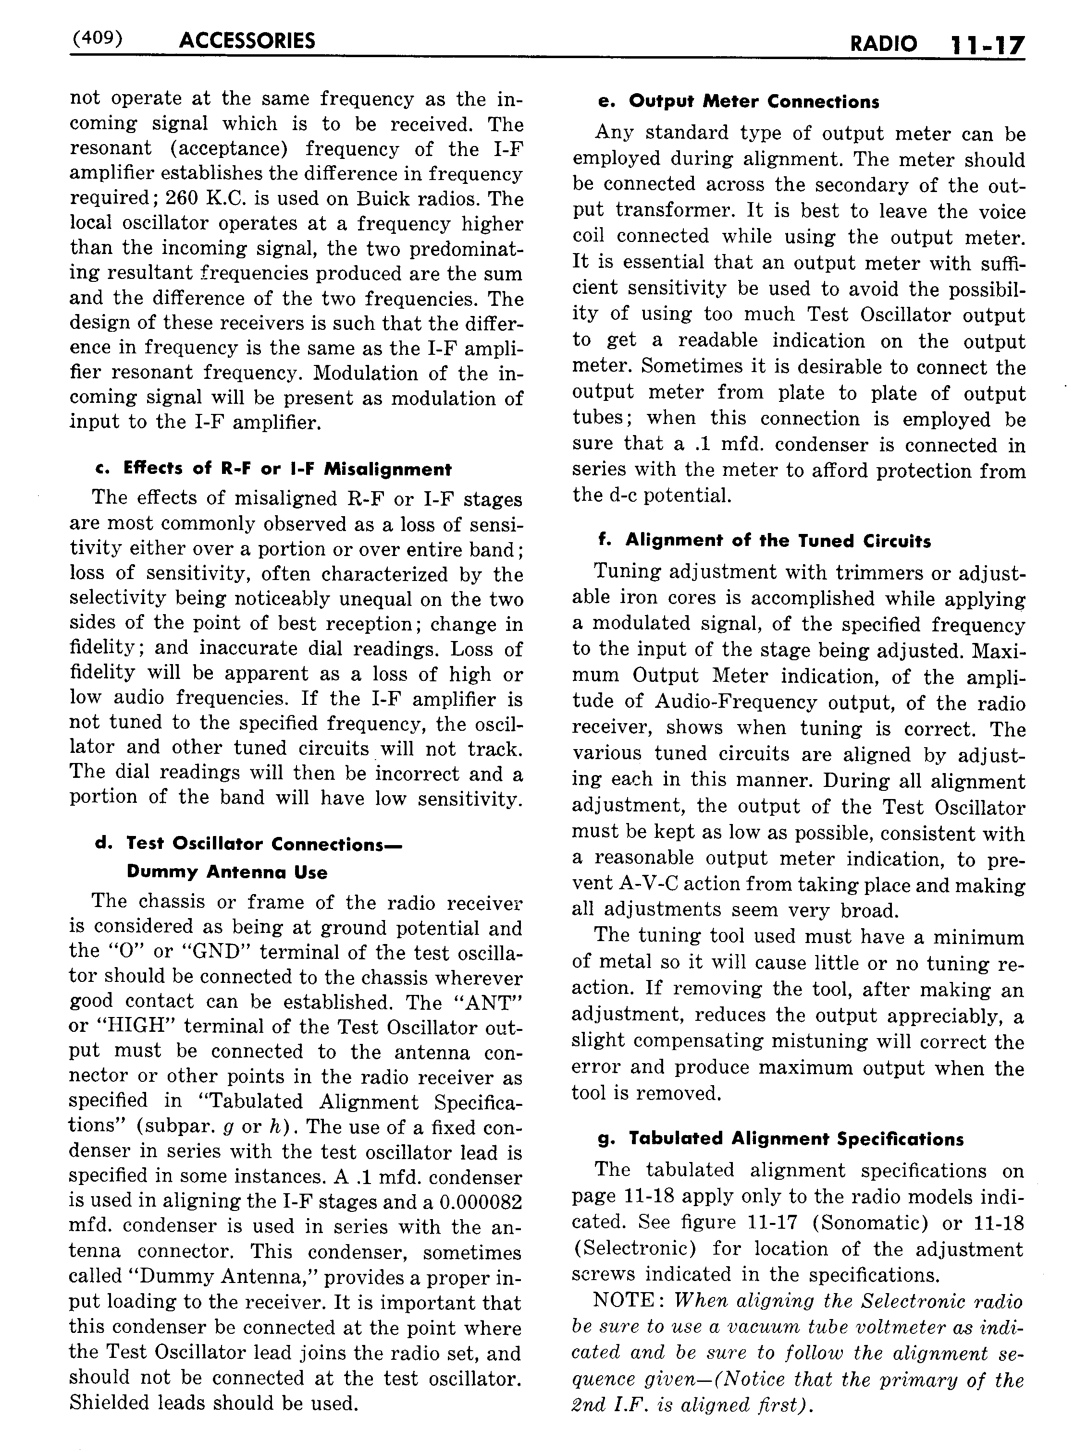 n_12 1951 Buick Shop Manual - Accessories-017-017.jpg